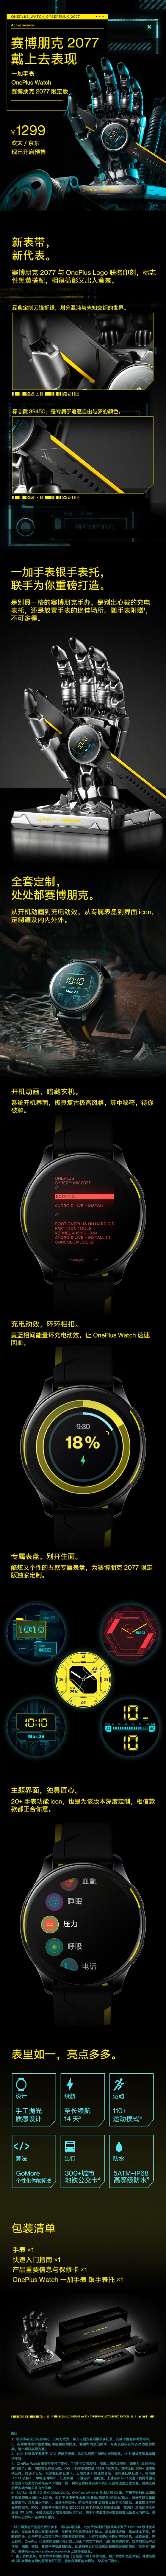 premiera OnePlus Watch Cyberpunk 2077 Edition cena specyfikacja techniczna